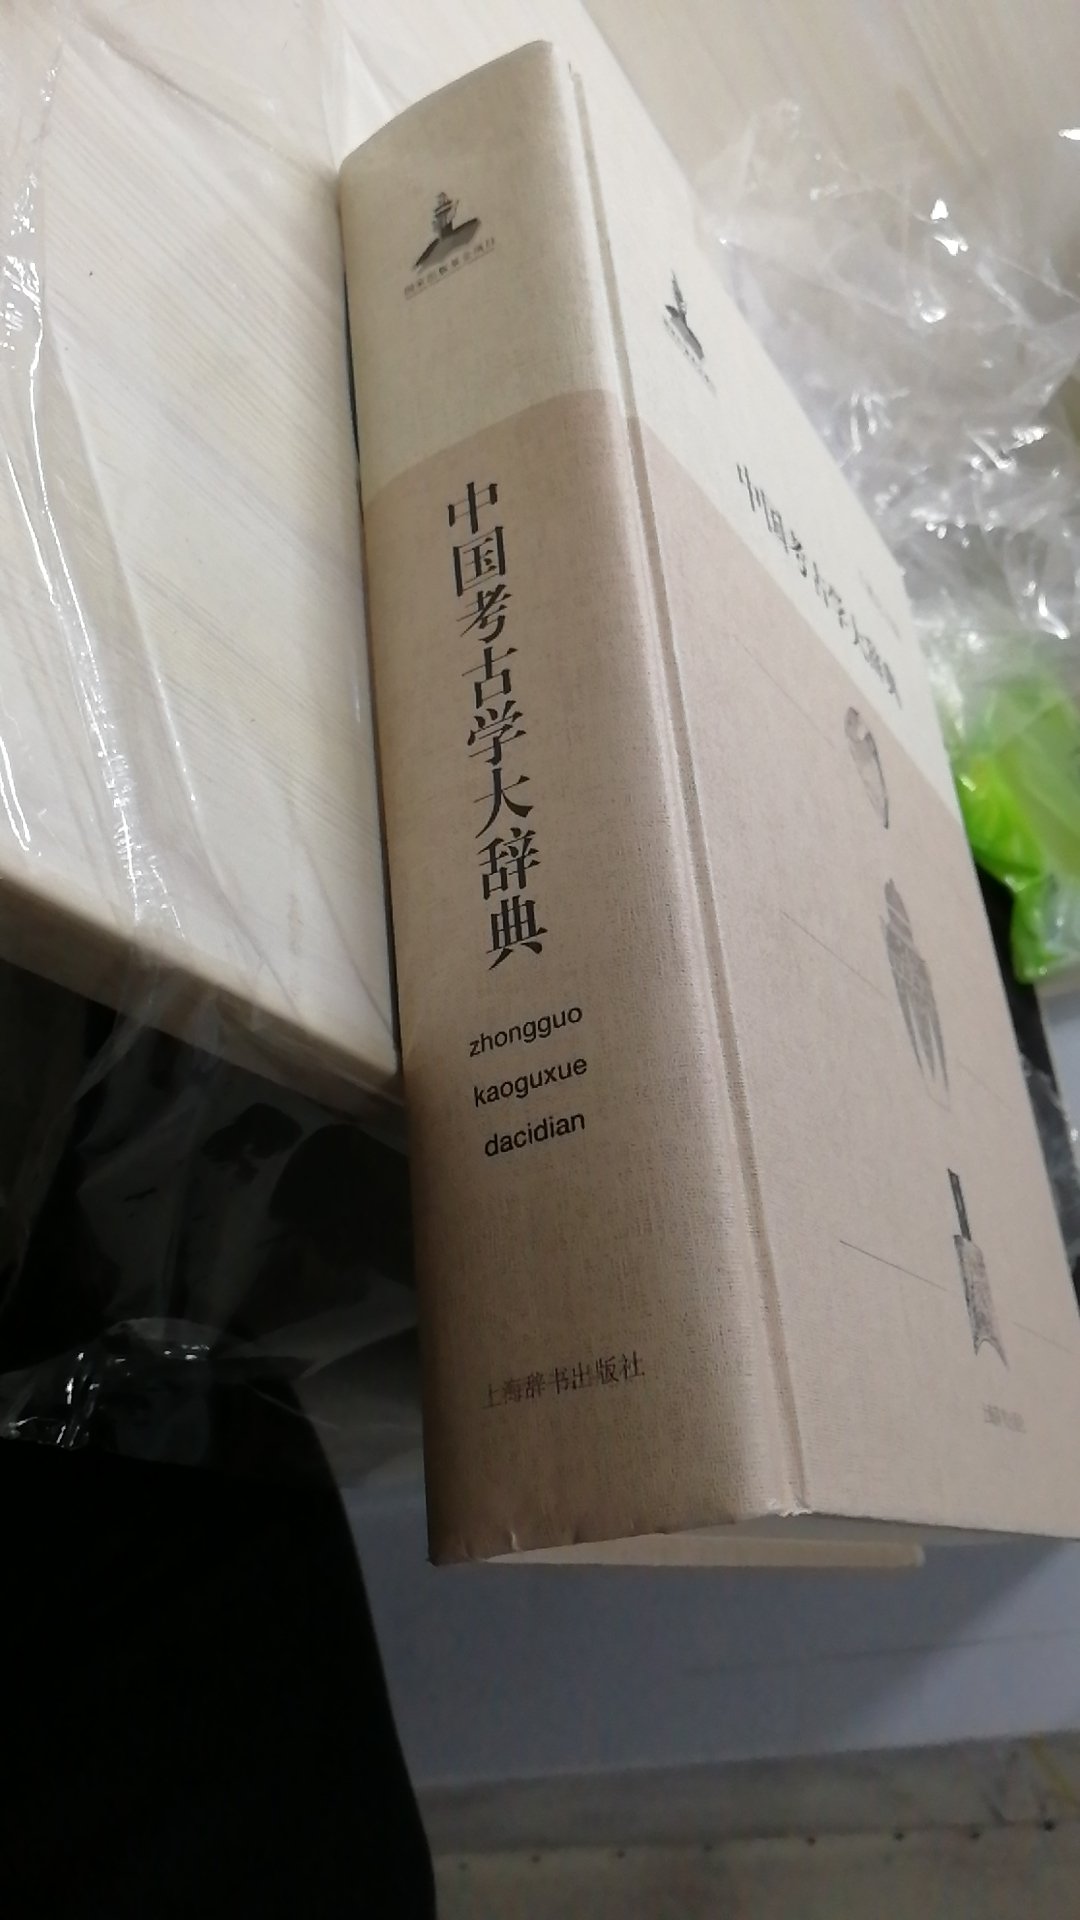 内容没得说，大辞典总共收录中国考古学词条5000余条，内容丰富，涉及广泛，必备工具书！拿到书的第一感觉就是很厚重！值得购买！